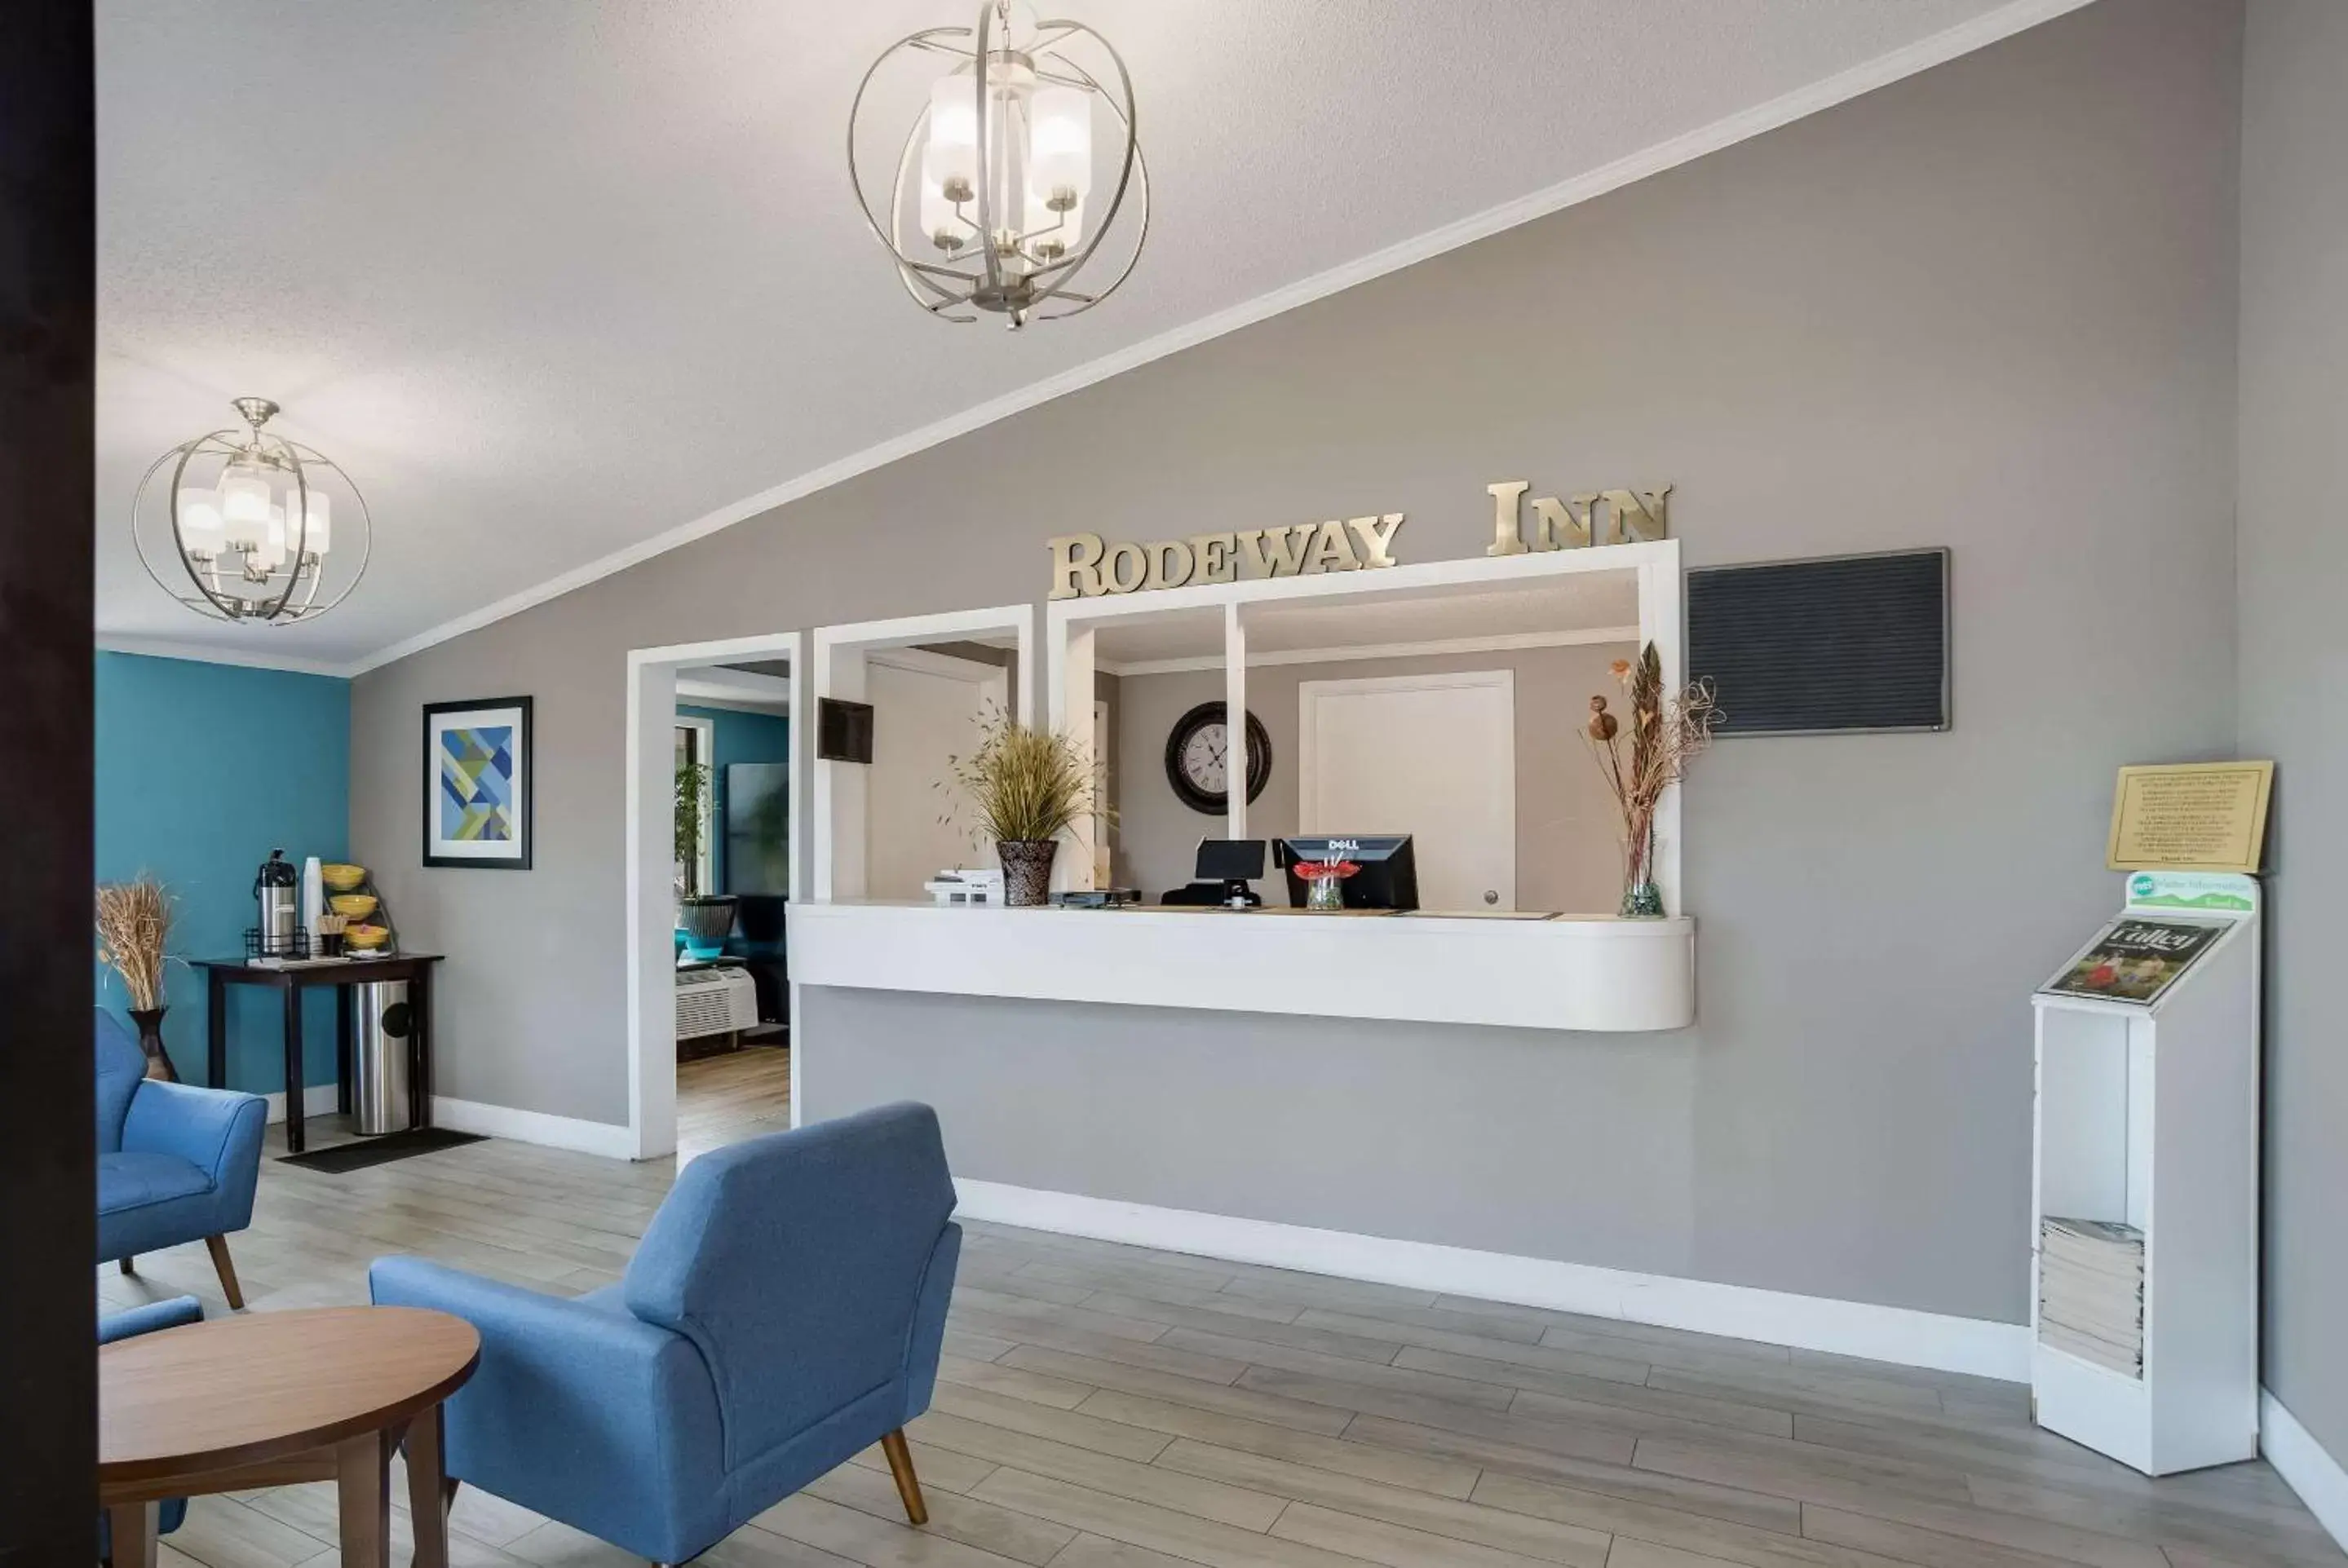 Lobby or reception, Lobby/Reception in Rodeway Inn Carlisle